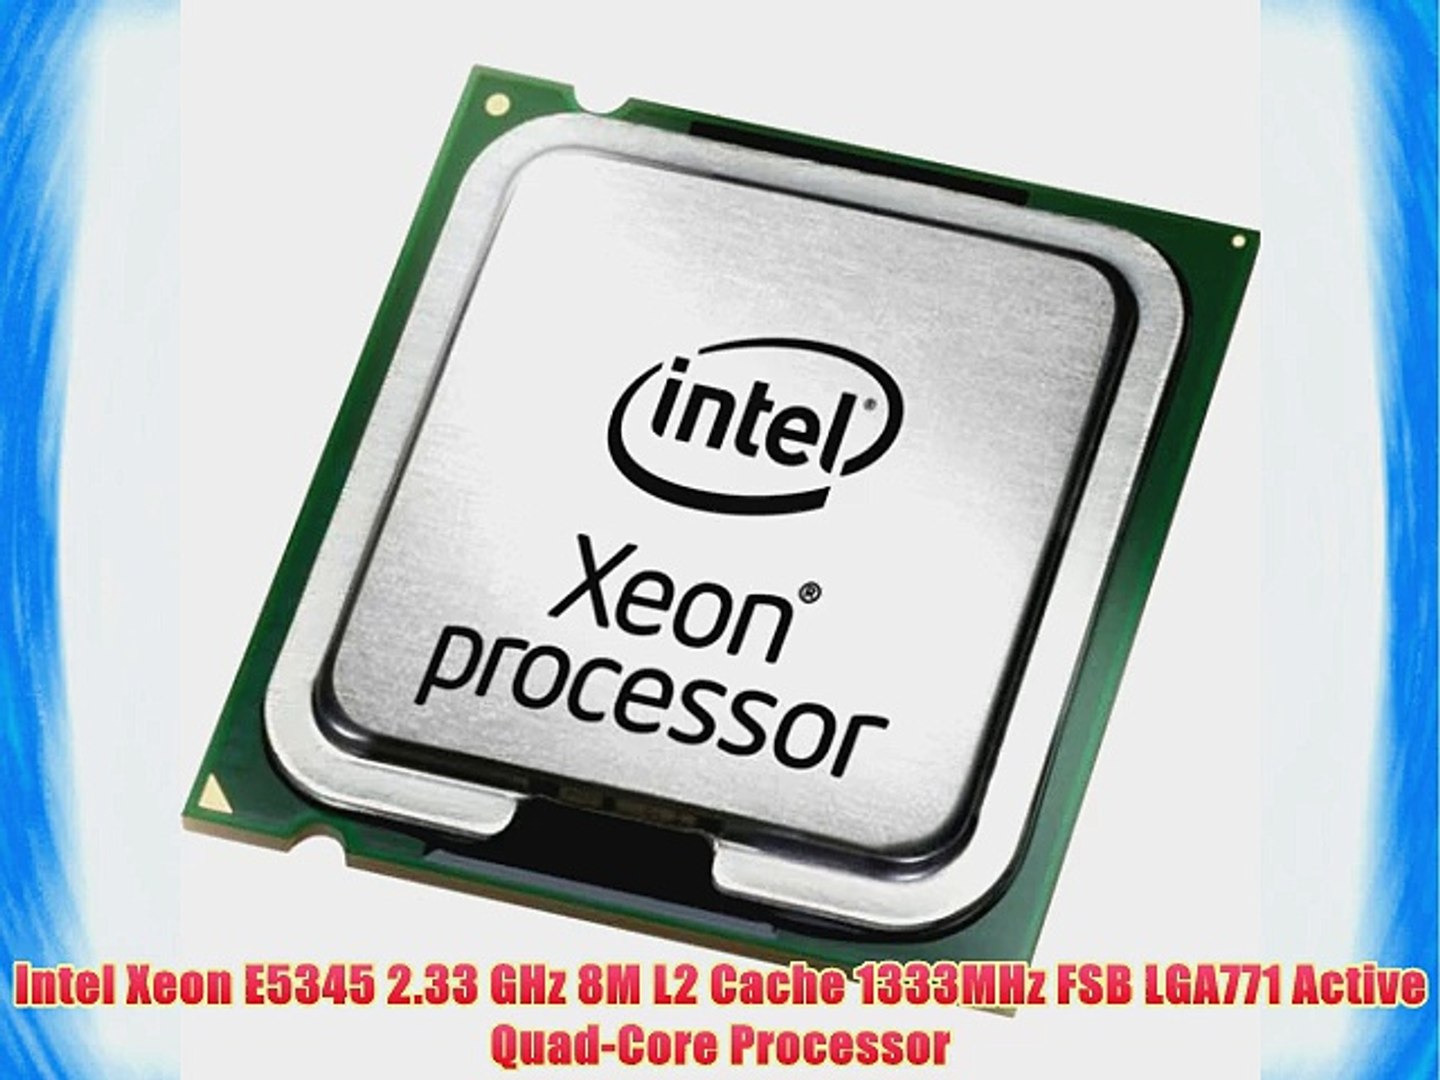 Intel Xeon E5345 2.33 GHz 8M L2 Cache 1333MHz FSB LGA771 Active Quad-Core  Processor - video Dailymotion